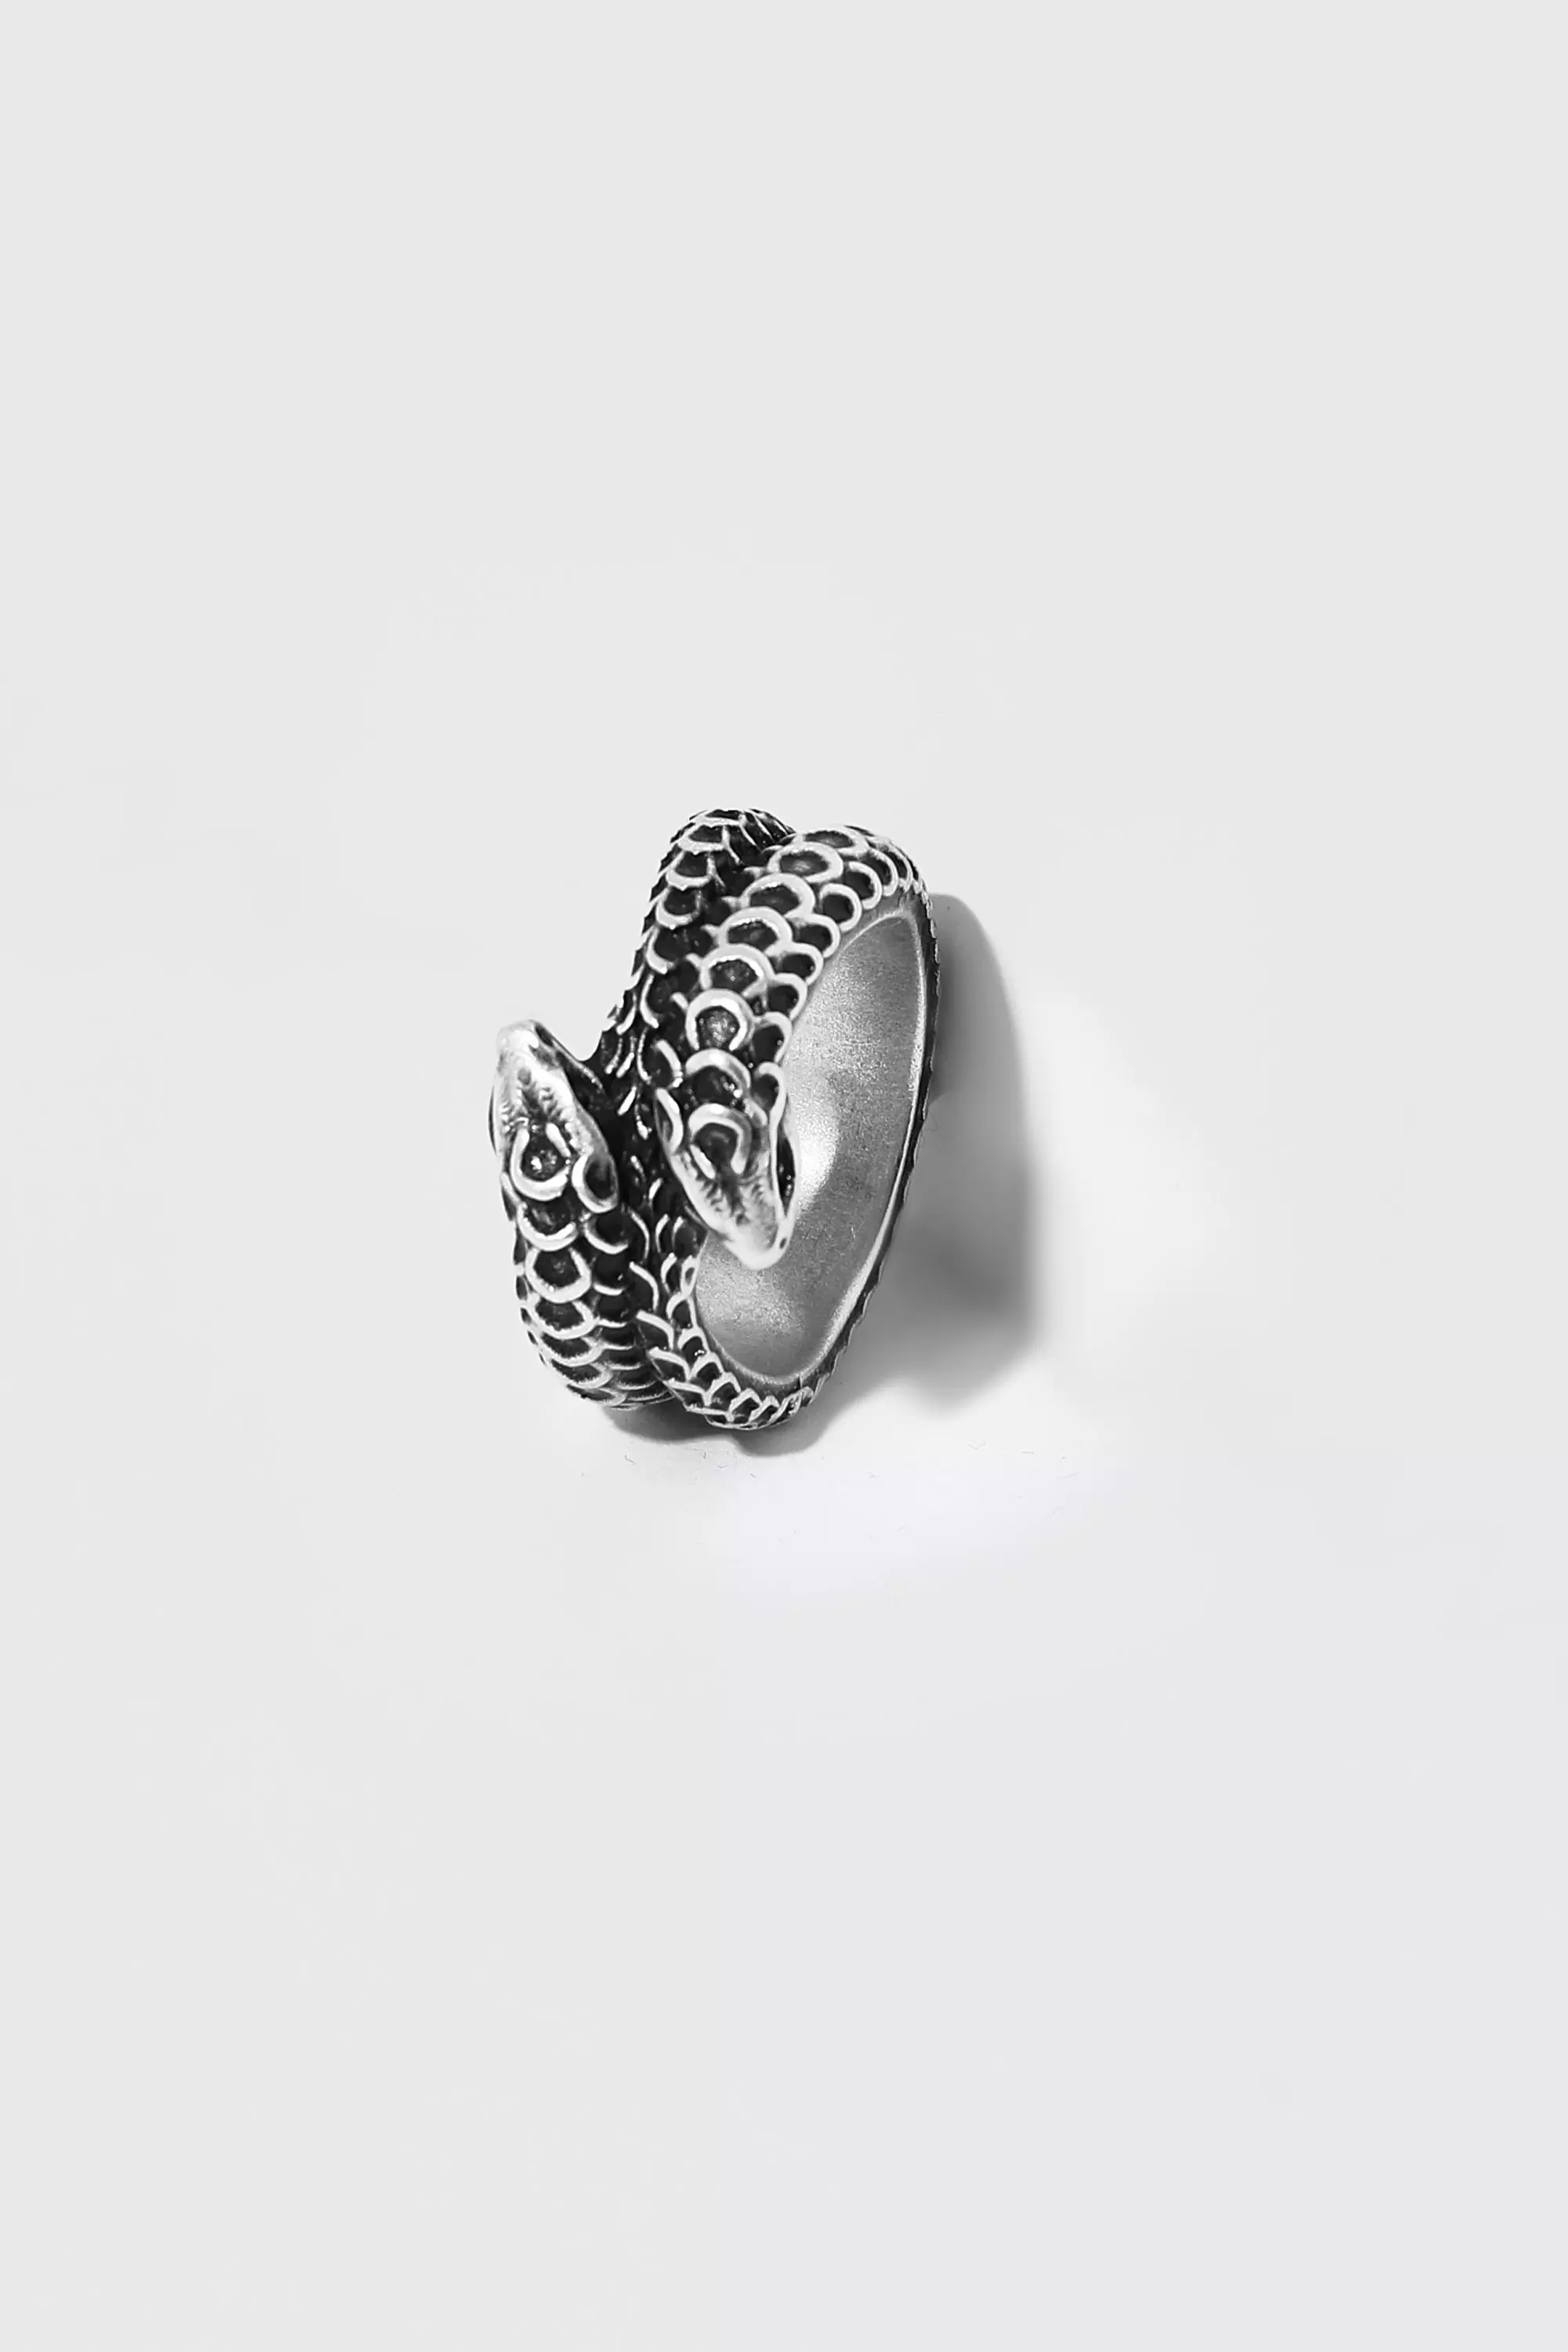 Gucci Garden Silver Snake Ring